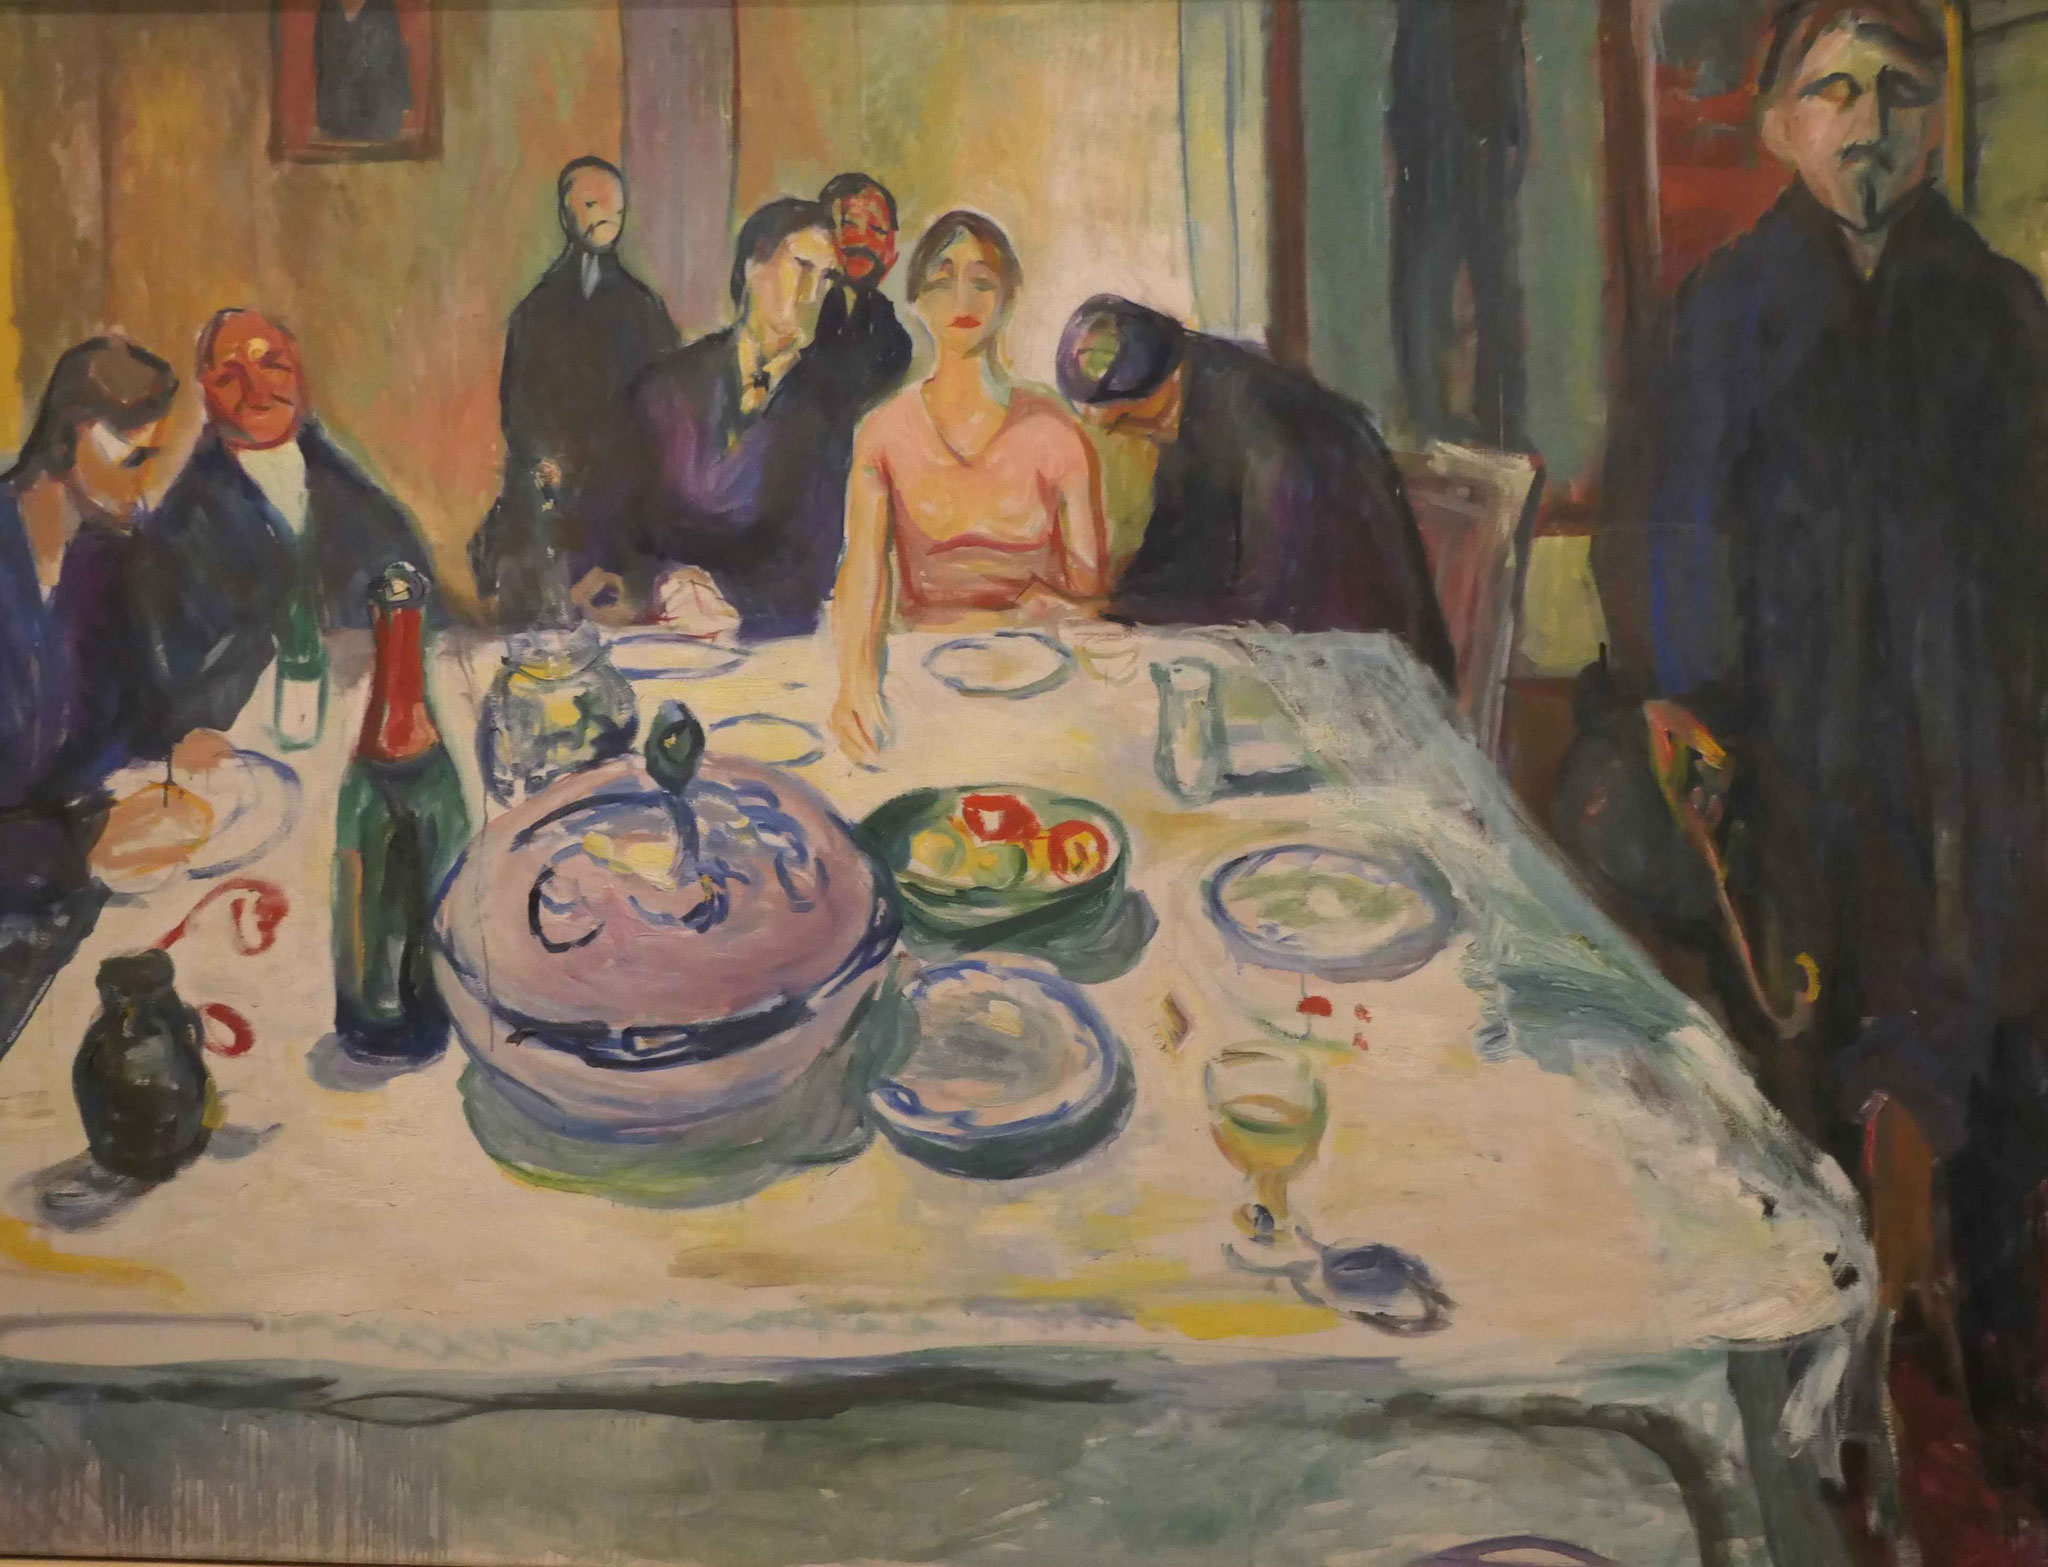 Edvard Munch, Die Hochzeit der Boheme, 1923, Munch Museum, Oslo